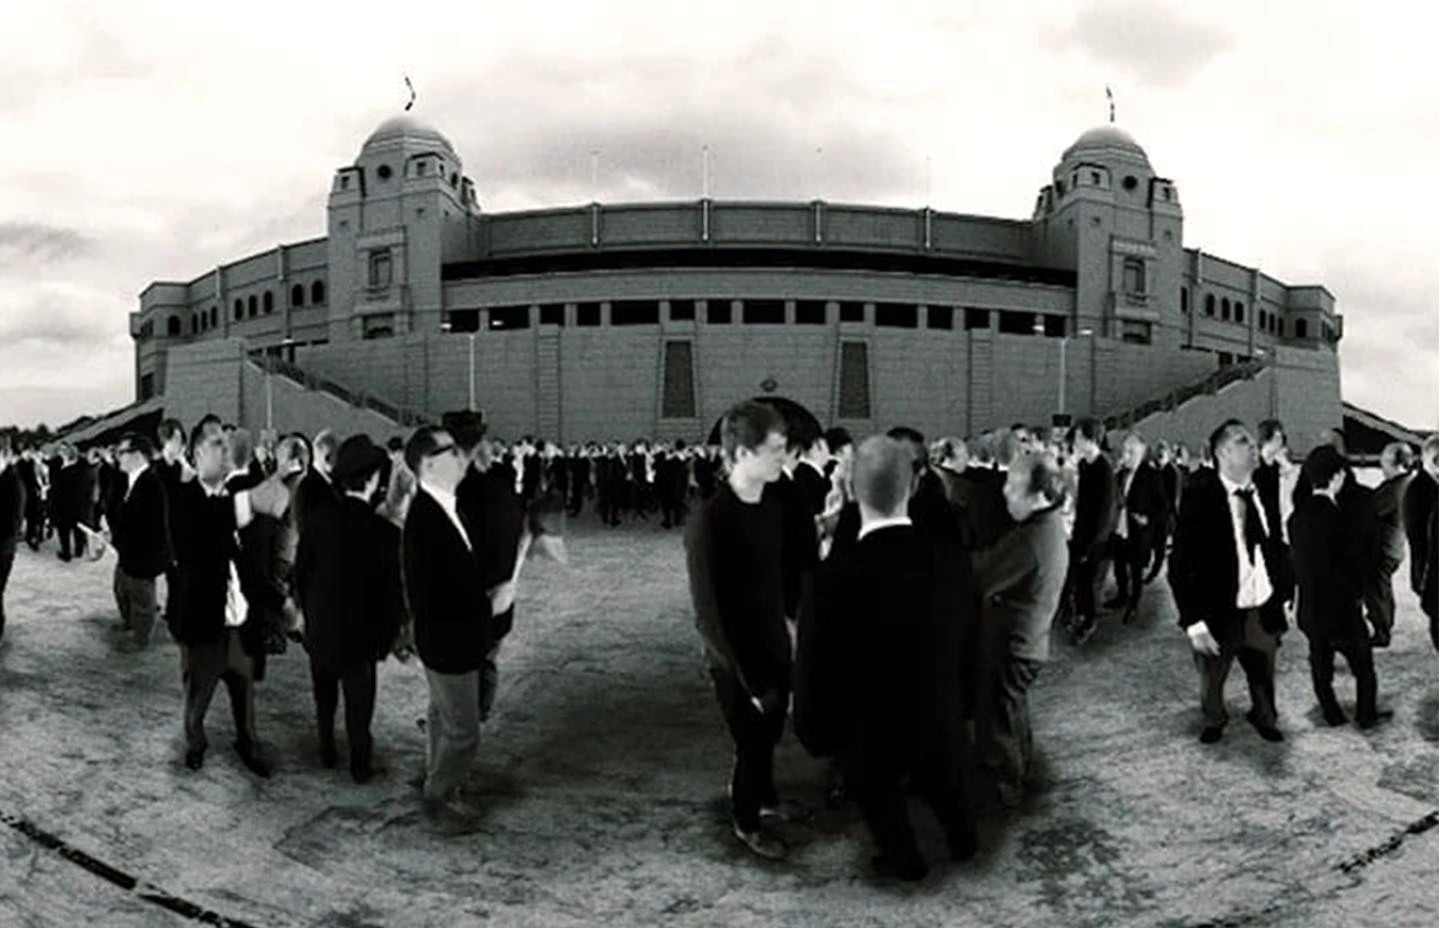 Black and white image of fans outside West Ham United football stadium